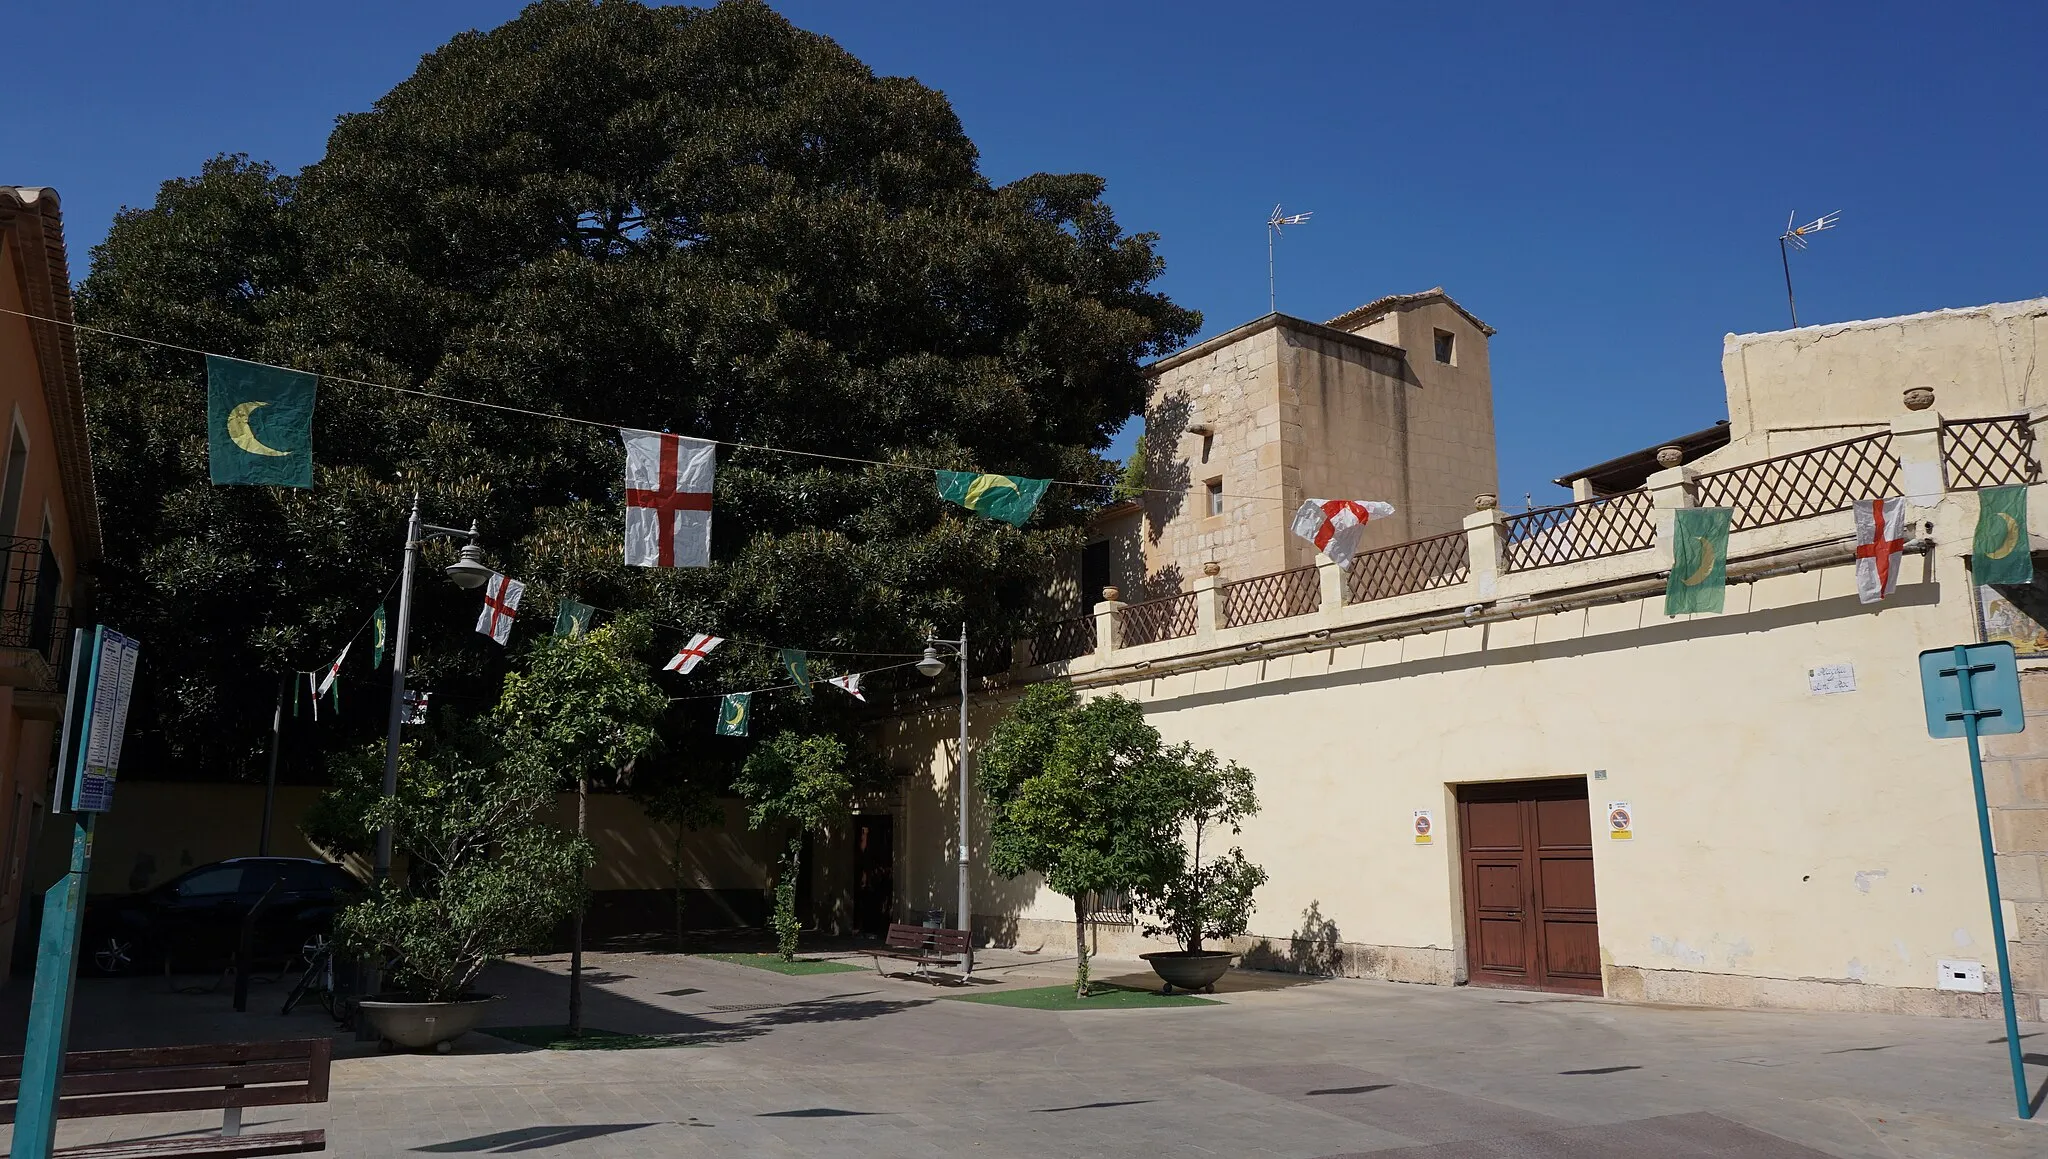 Photo showing: Se puede observar en el centro derecha la Torre Ferraz, a su izquierda se ve el ficus que asoma del Jardín de la Finca Casa de Ferraz, y también se observa la plaza San Roque, en la que desemboca la finca.